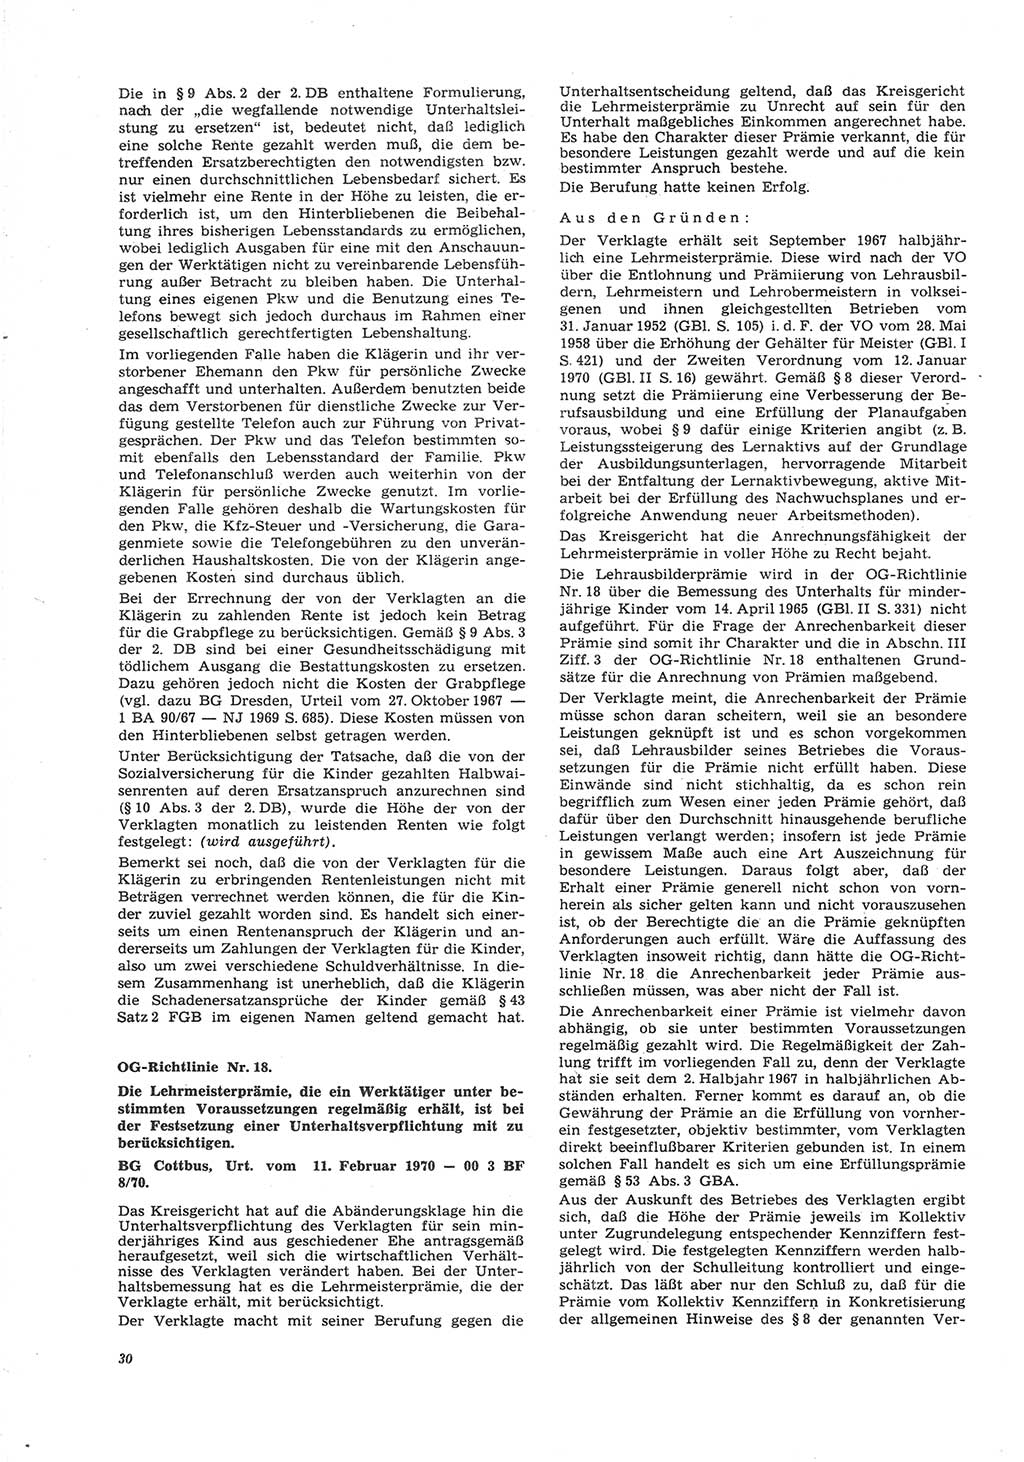 Neue Justiz (NJ), Zeitschrift für Recht und Rechtswissenschaft [Deutsche Demokratische Republik (DDR)], 26. Jahrgang 1972, Seite 30 (NJ DDR 1972, S. 30)